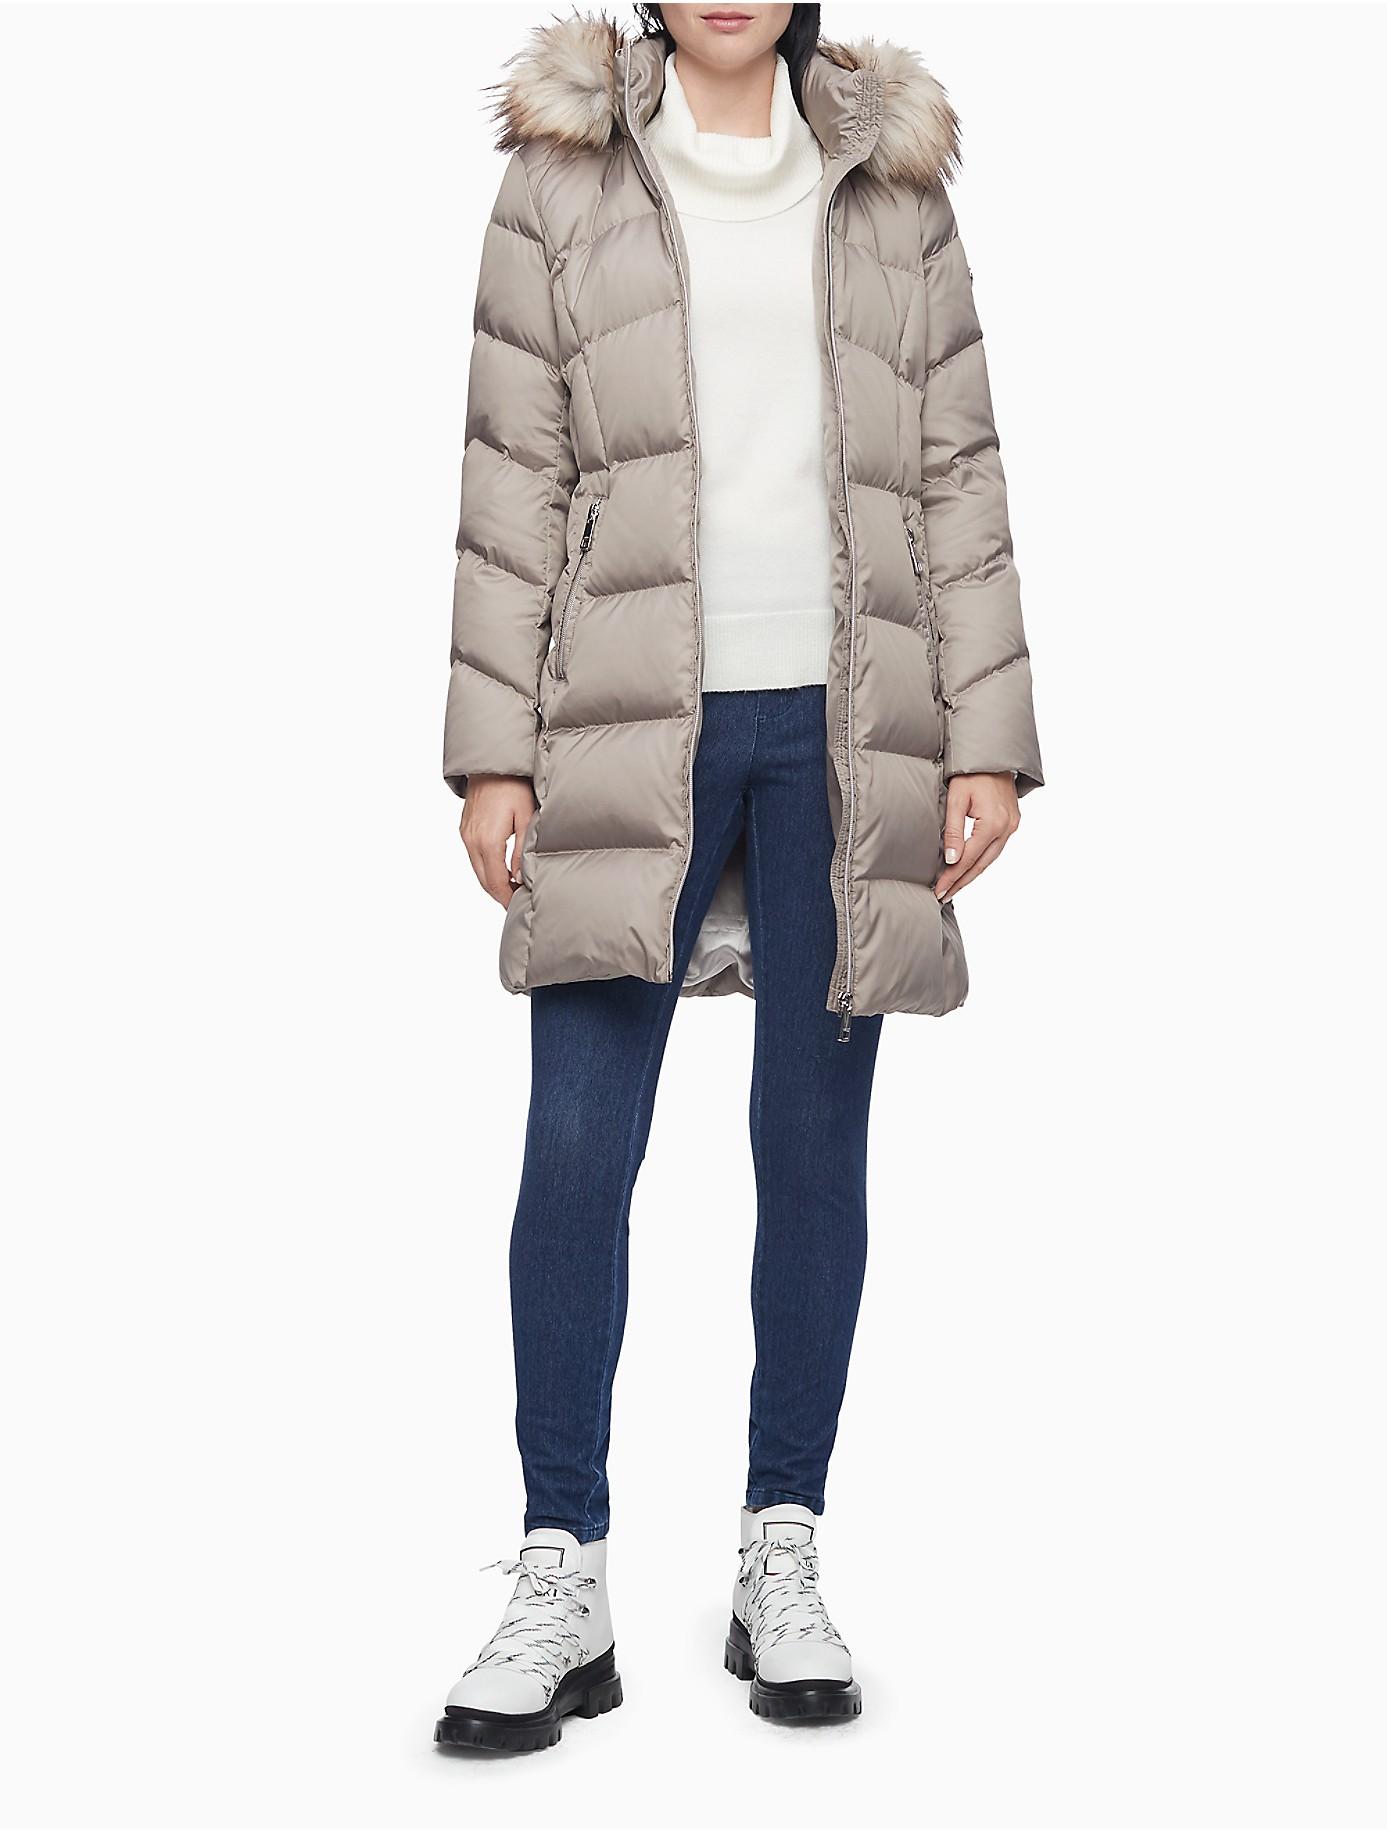 Introducir 62+ imagen calvin klein winter coat with fur hood ...